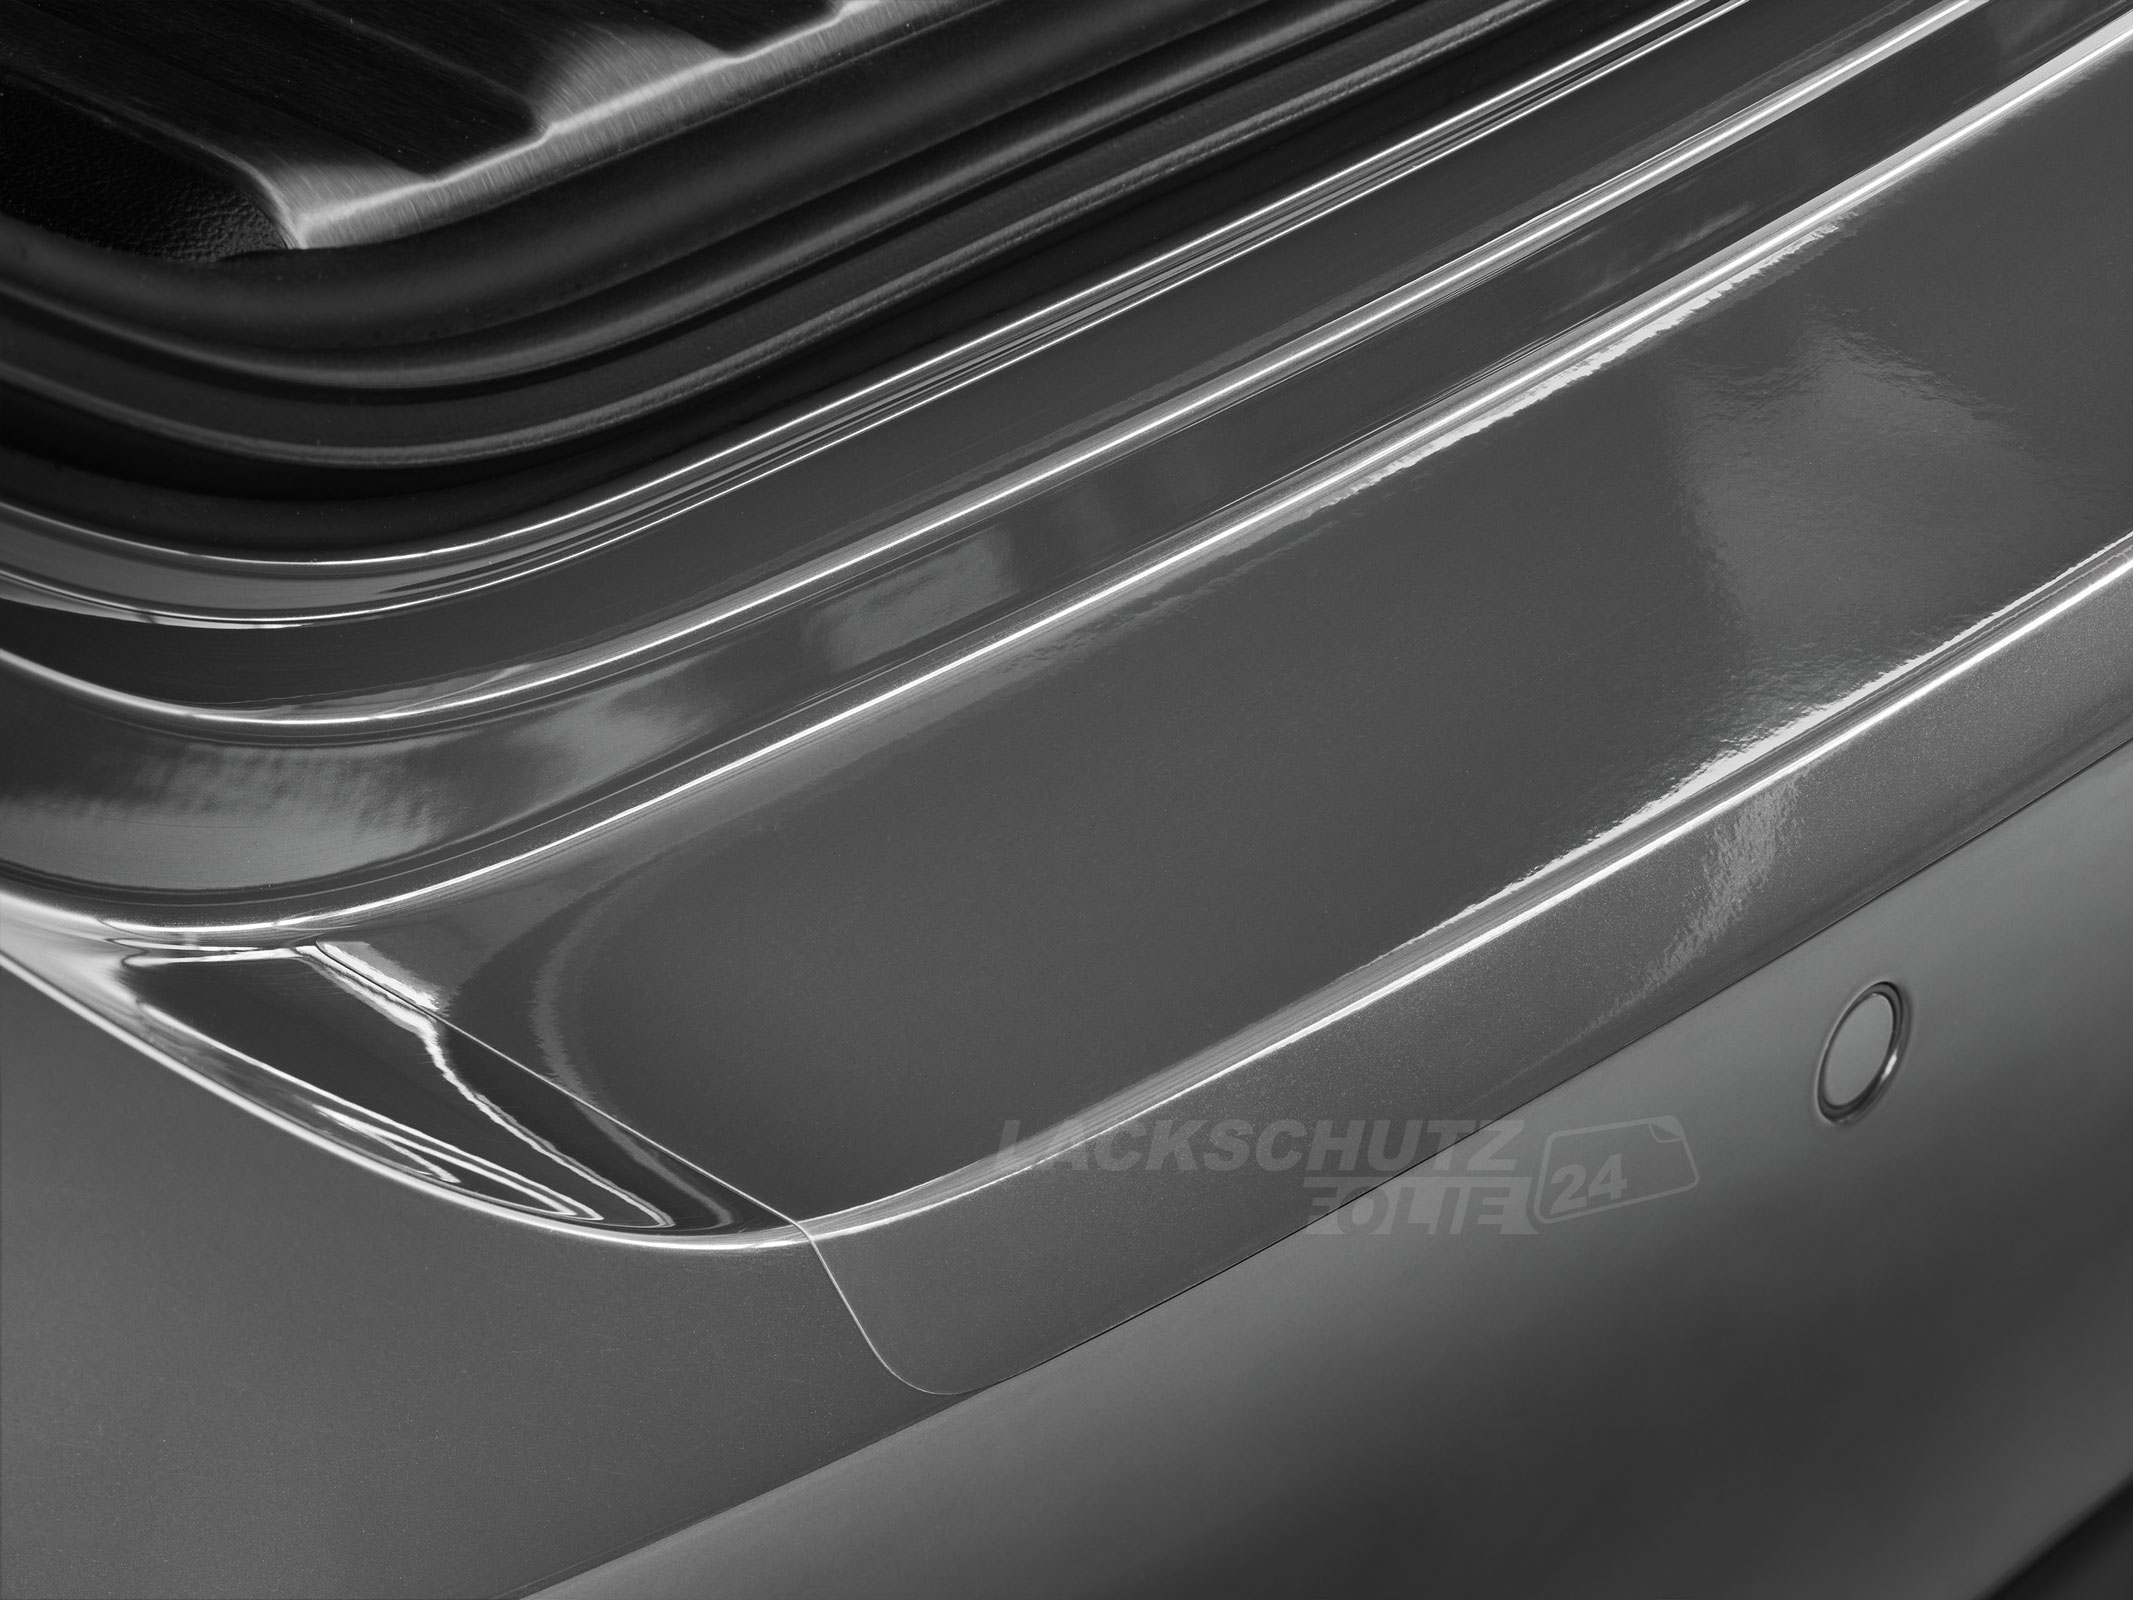 Ladekantenschutzfolie - Transparent Glatt Hochglänzend 240 µm stark für VW / Volkswagen Polo (III) Typ 6N2, BJ 1999-2001